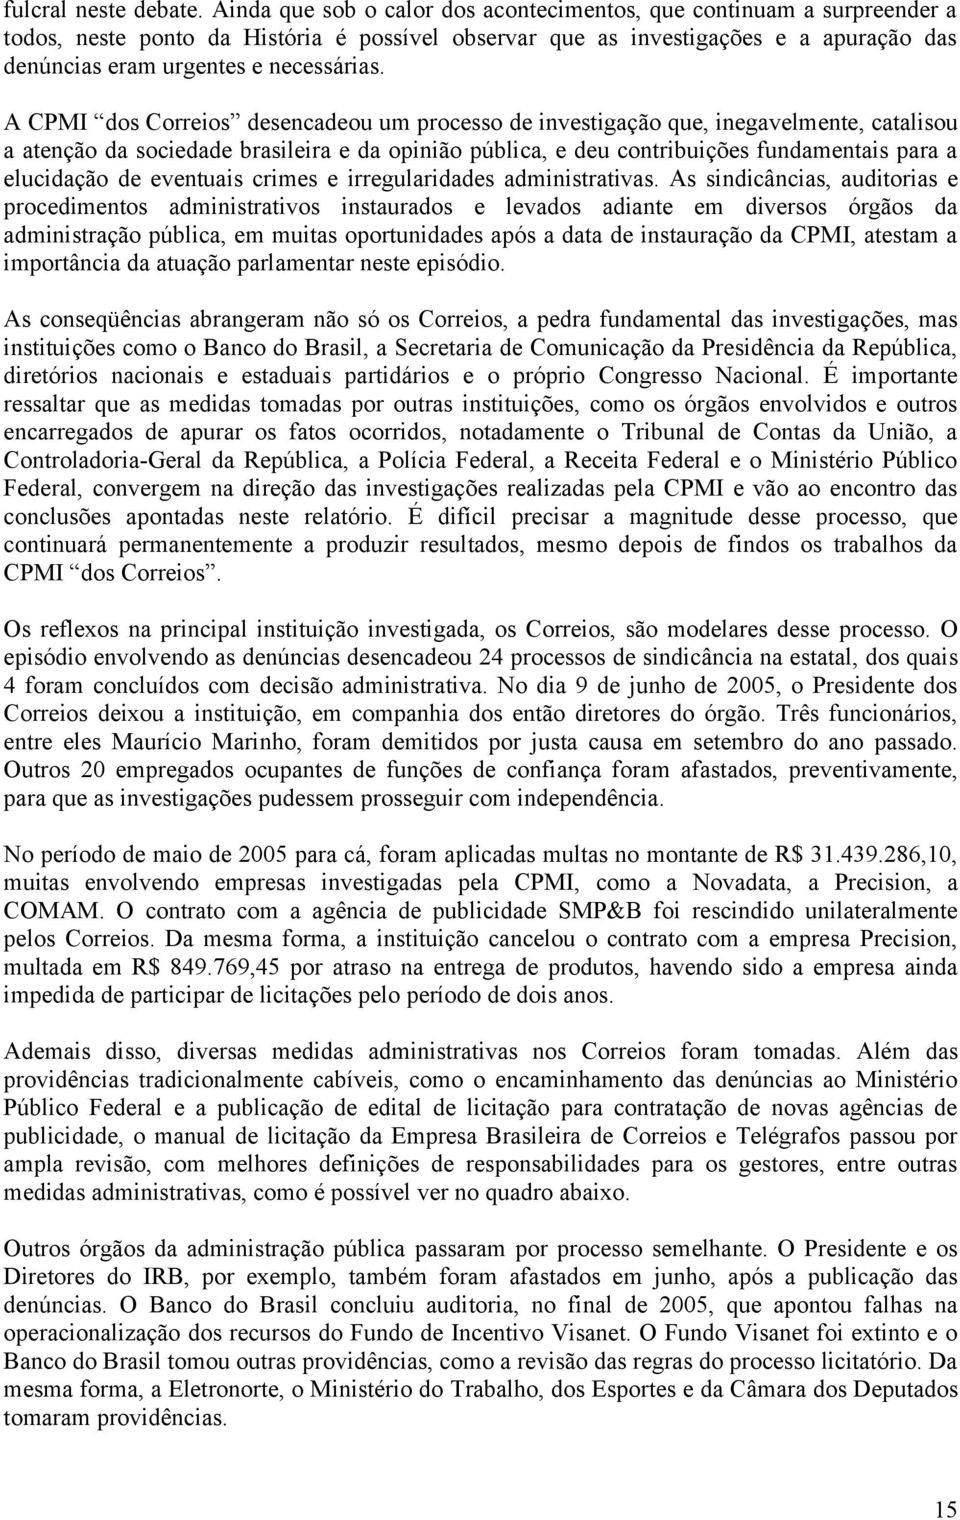 A CPMI dos Correios desencadeou um processo de investigação que, inegavelmente, catalisou a atenção da sociedade brasileira e da opinião pública, e deu contribuições fundamentais para a elucidação de